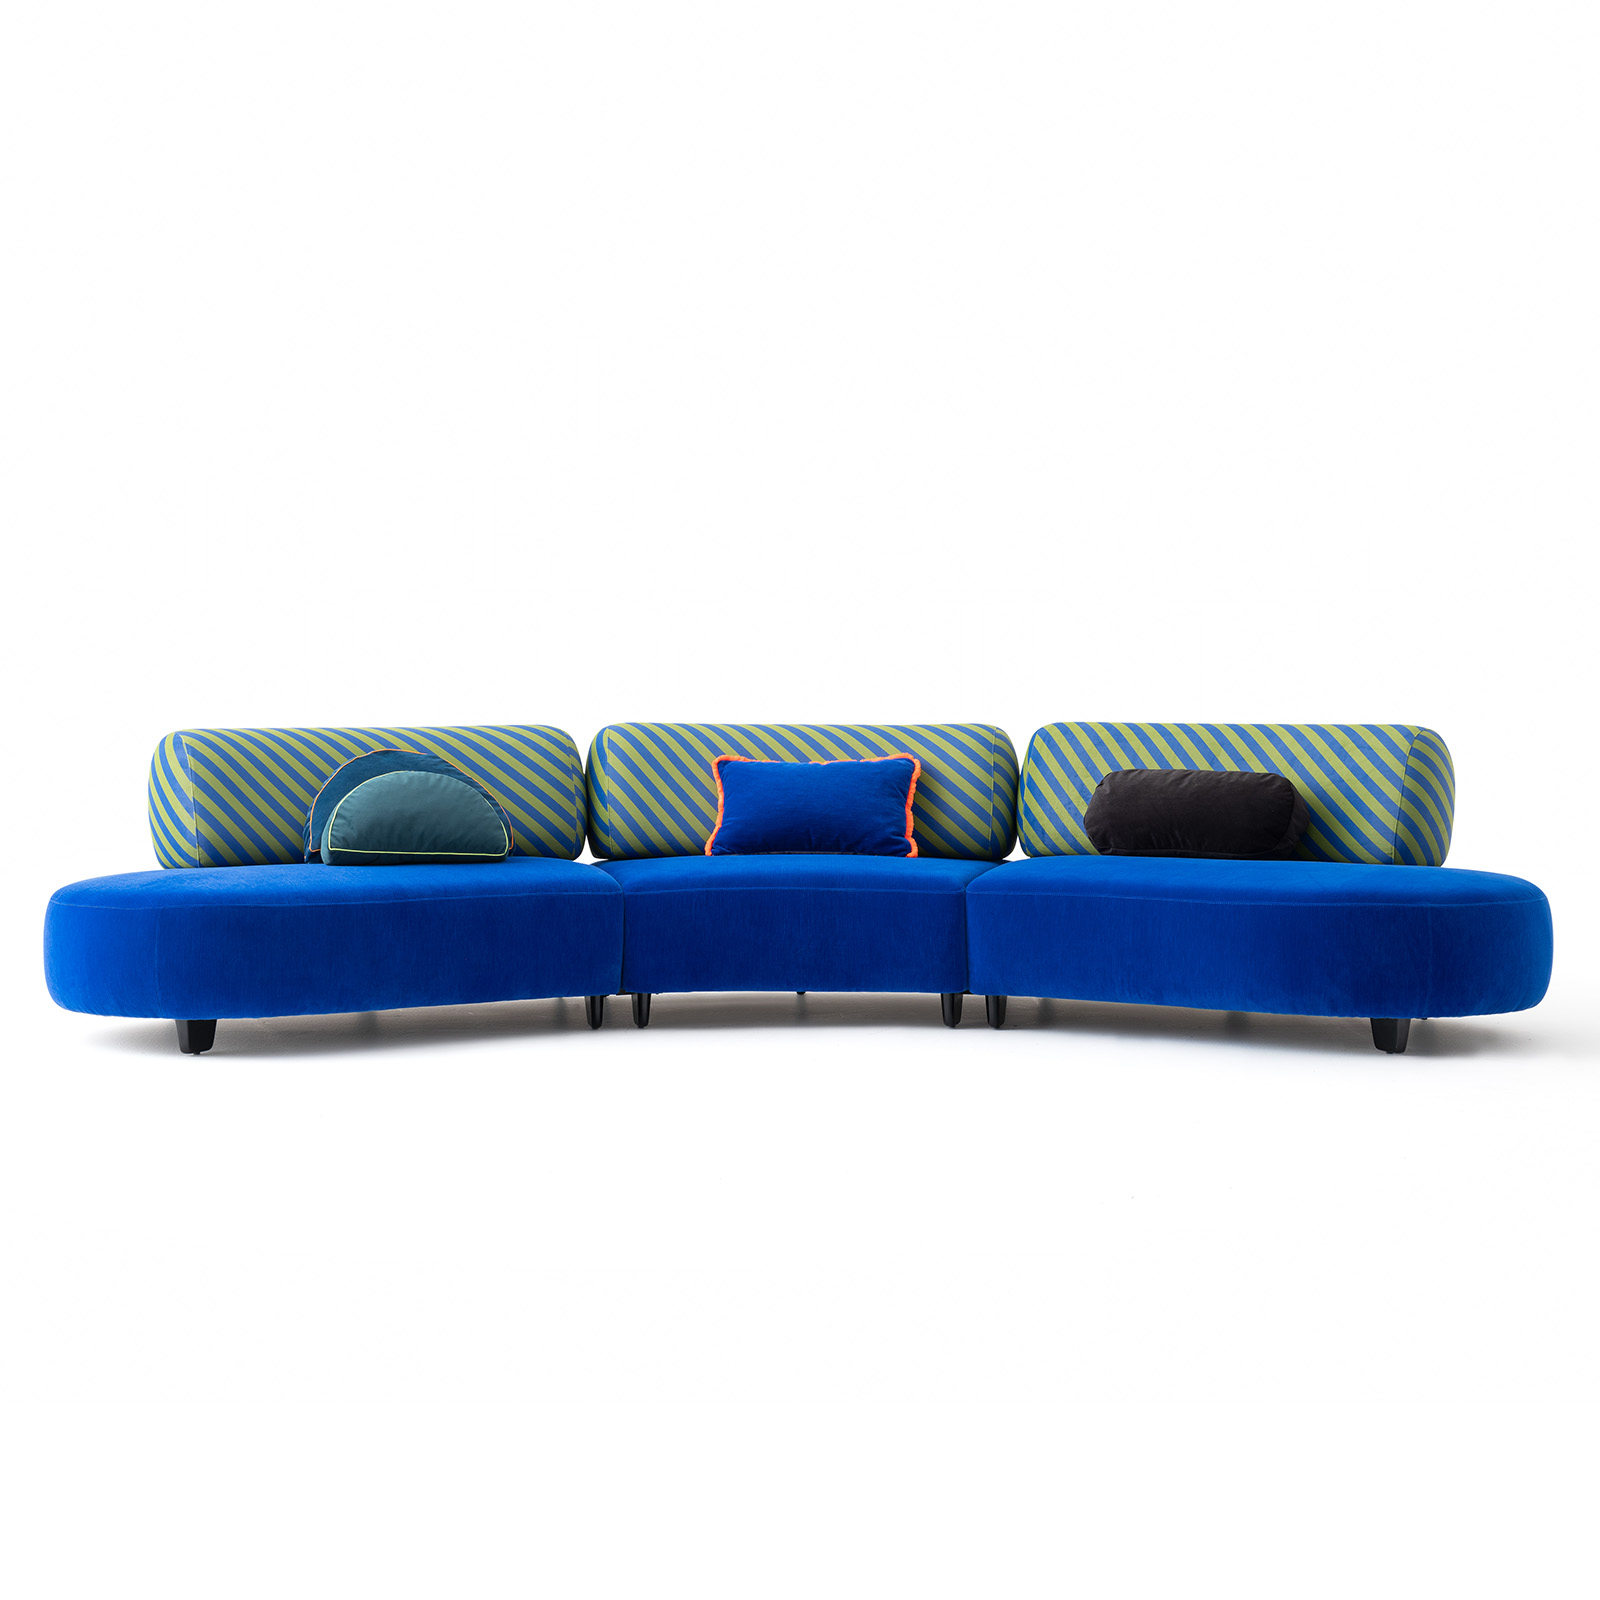 Bon bon Iyot Modular Sofa - Curved Modules Combination